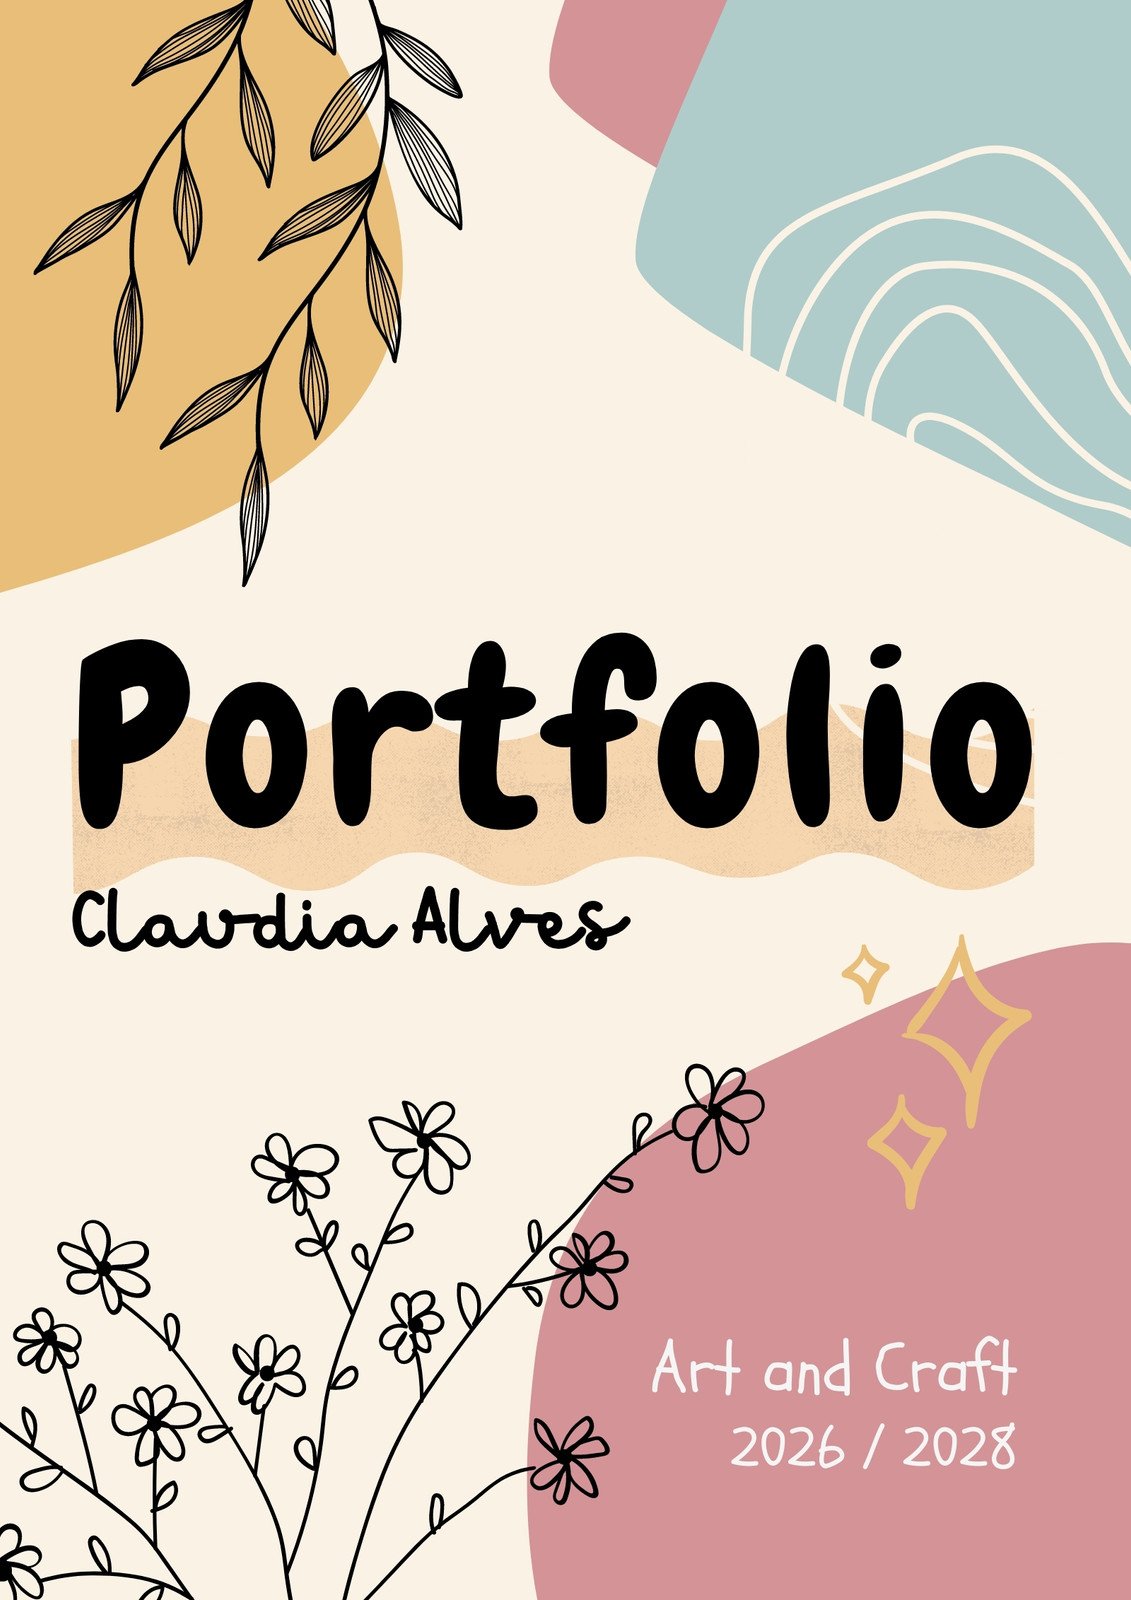 Hardbound Portfolio Case Part 1 • Handmade Books and Journals